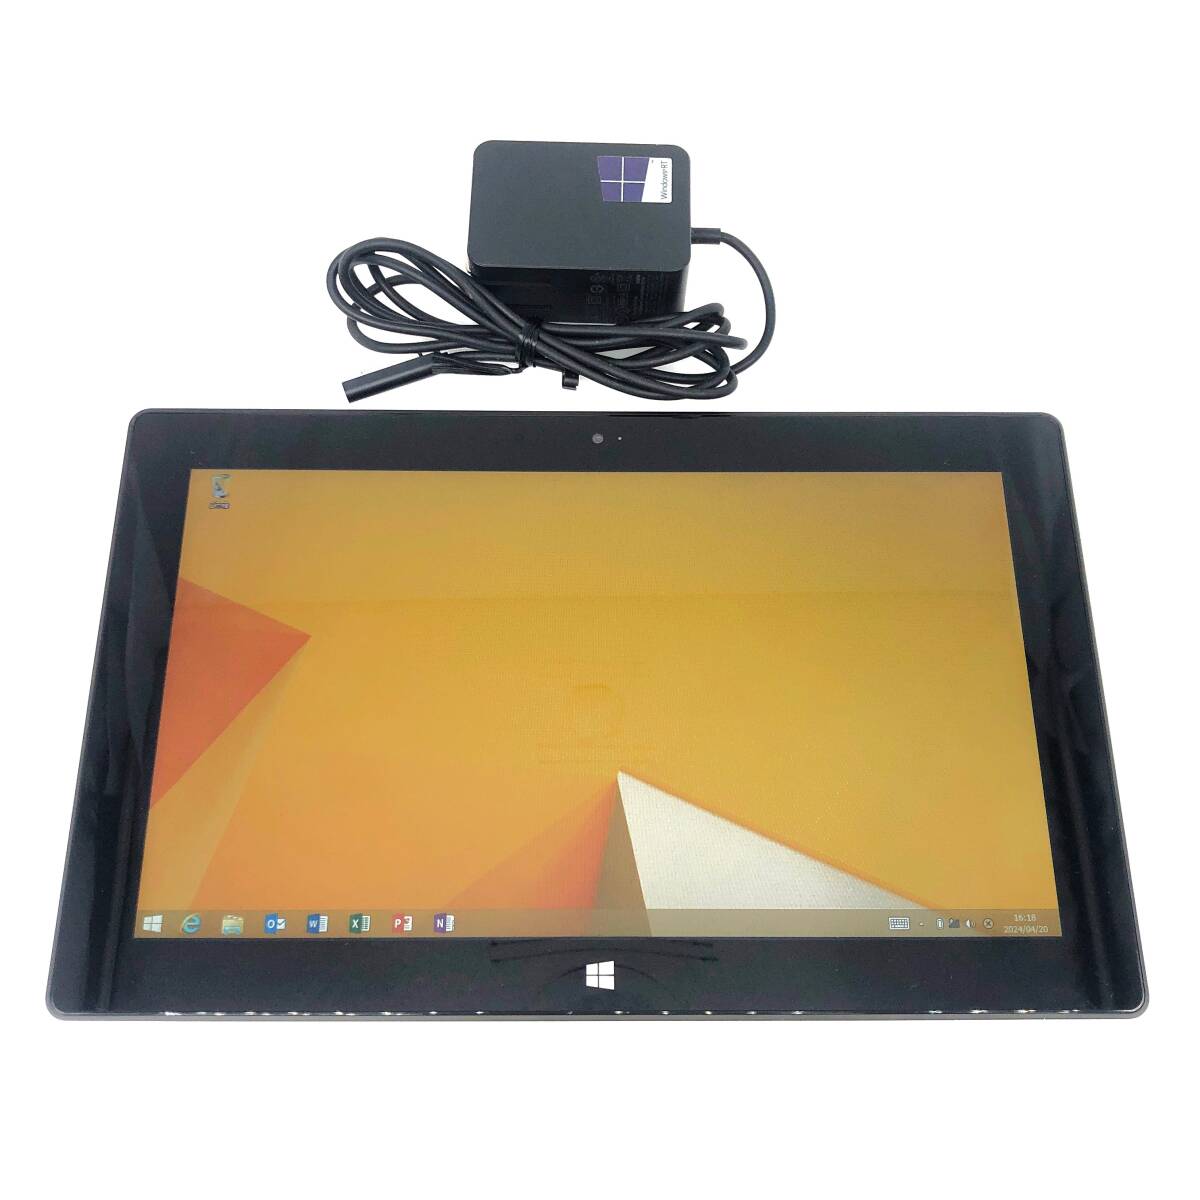 ★動作確認済み★Microsoft Surface 1516 WindowsRT8.1 64GB 10.6型 NVIDIA TEGRA 3 Quad 1.30GHzの画像1